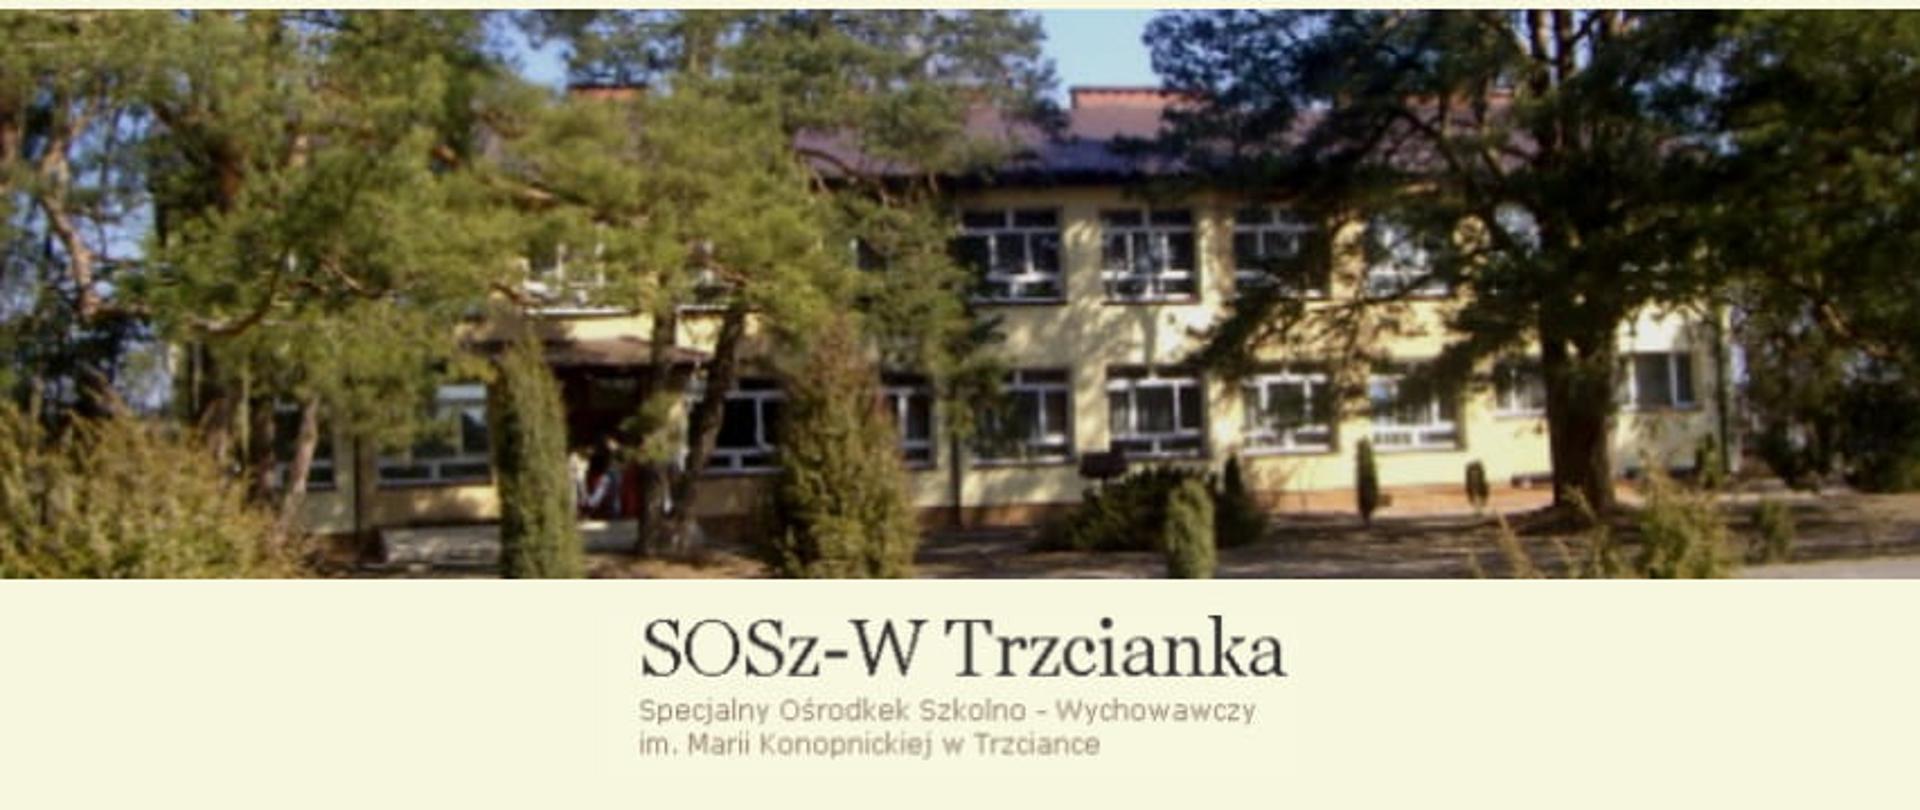 SoSz-W Trzcianka